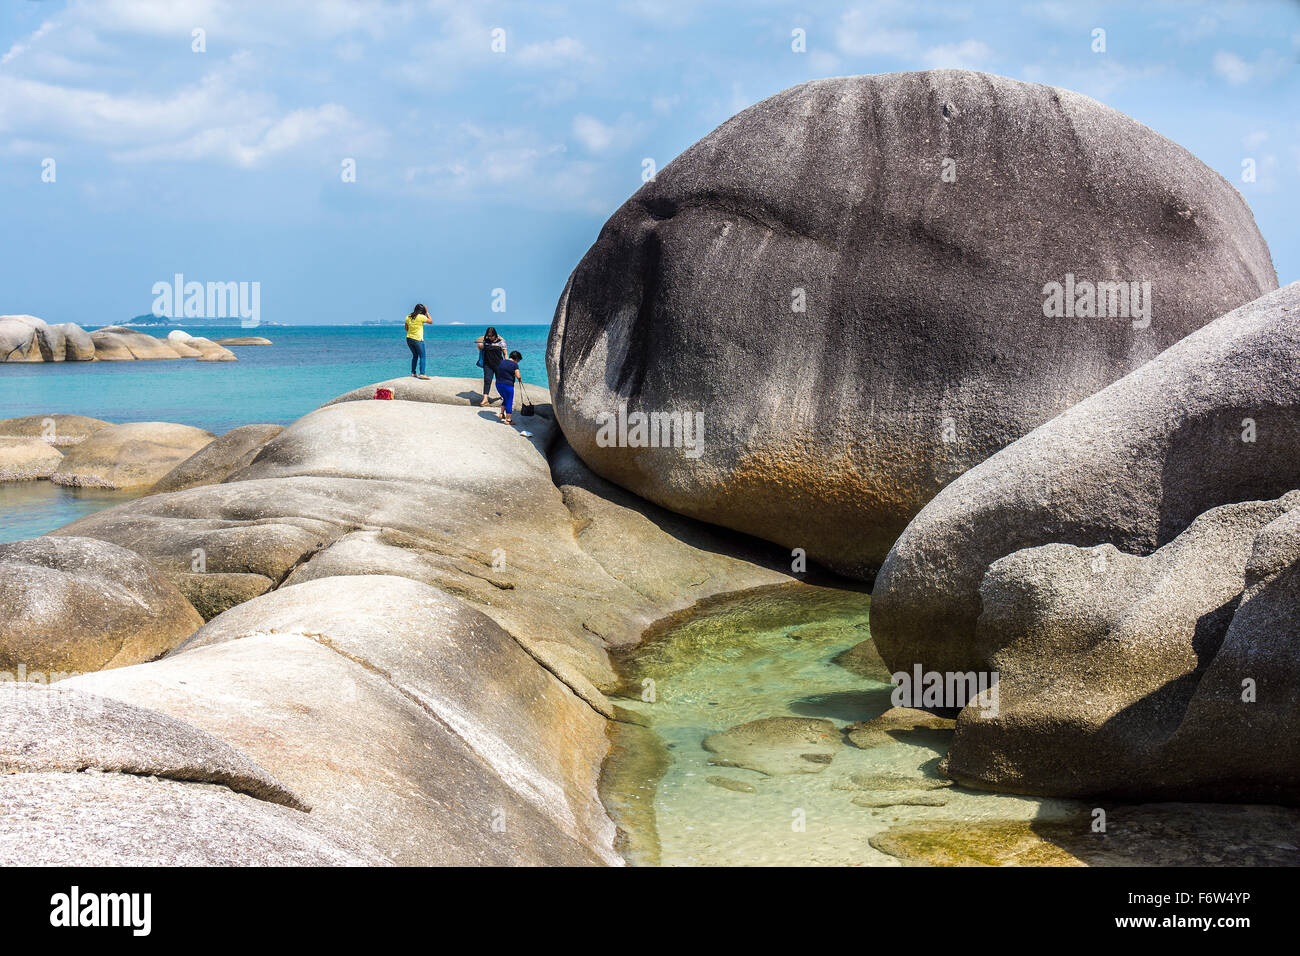 Indonesia, Belitung, Tanjung Tinggi Beach, granitic rocks at beach Stock Photo